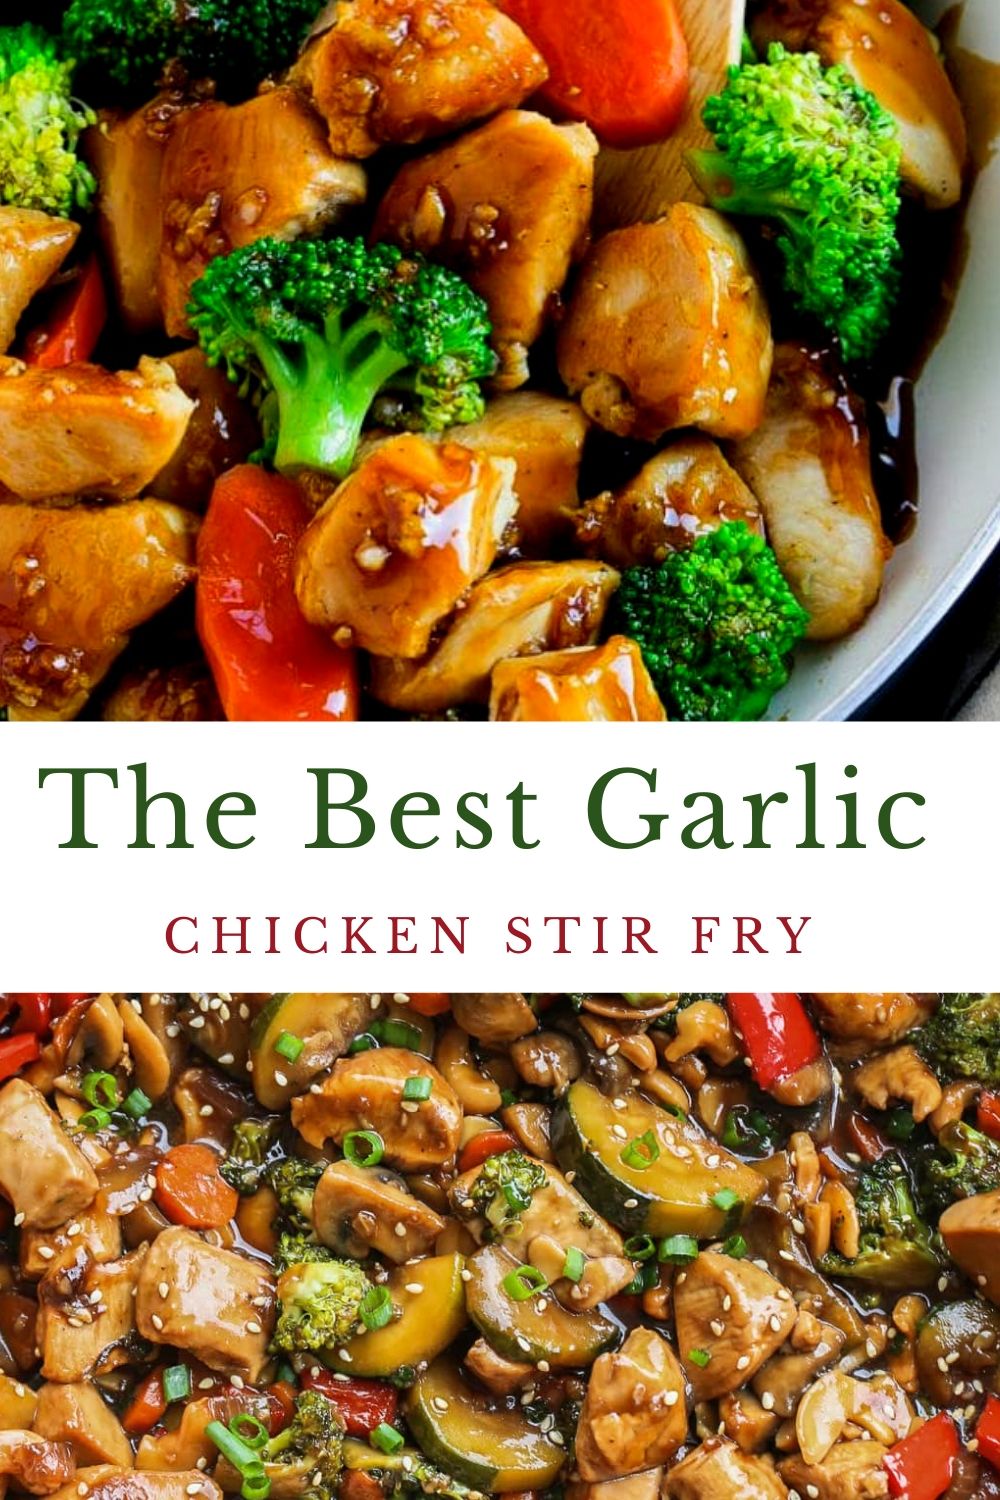 NEW !! The Best Garlic Chicken Stir Fry